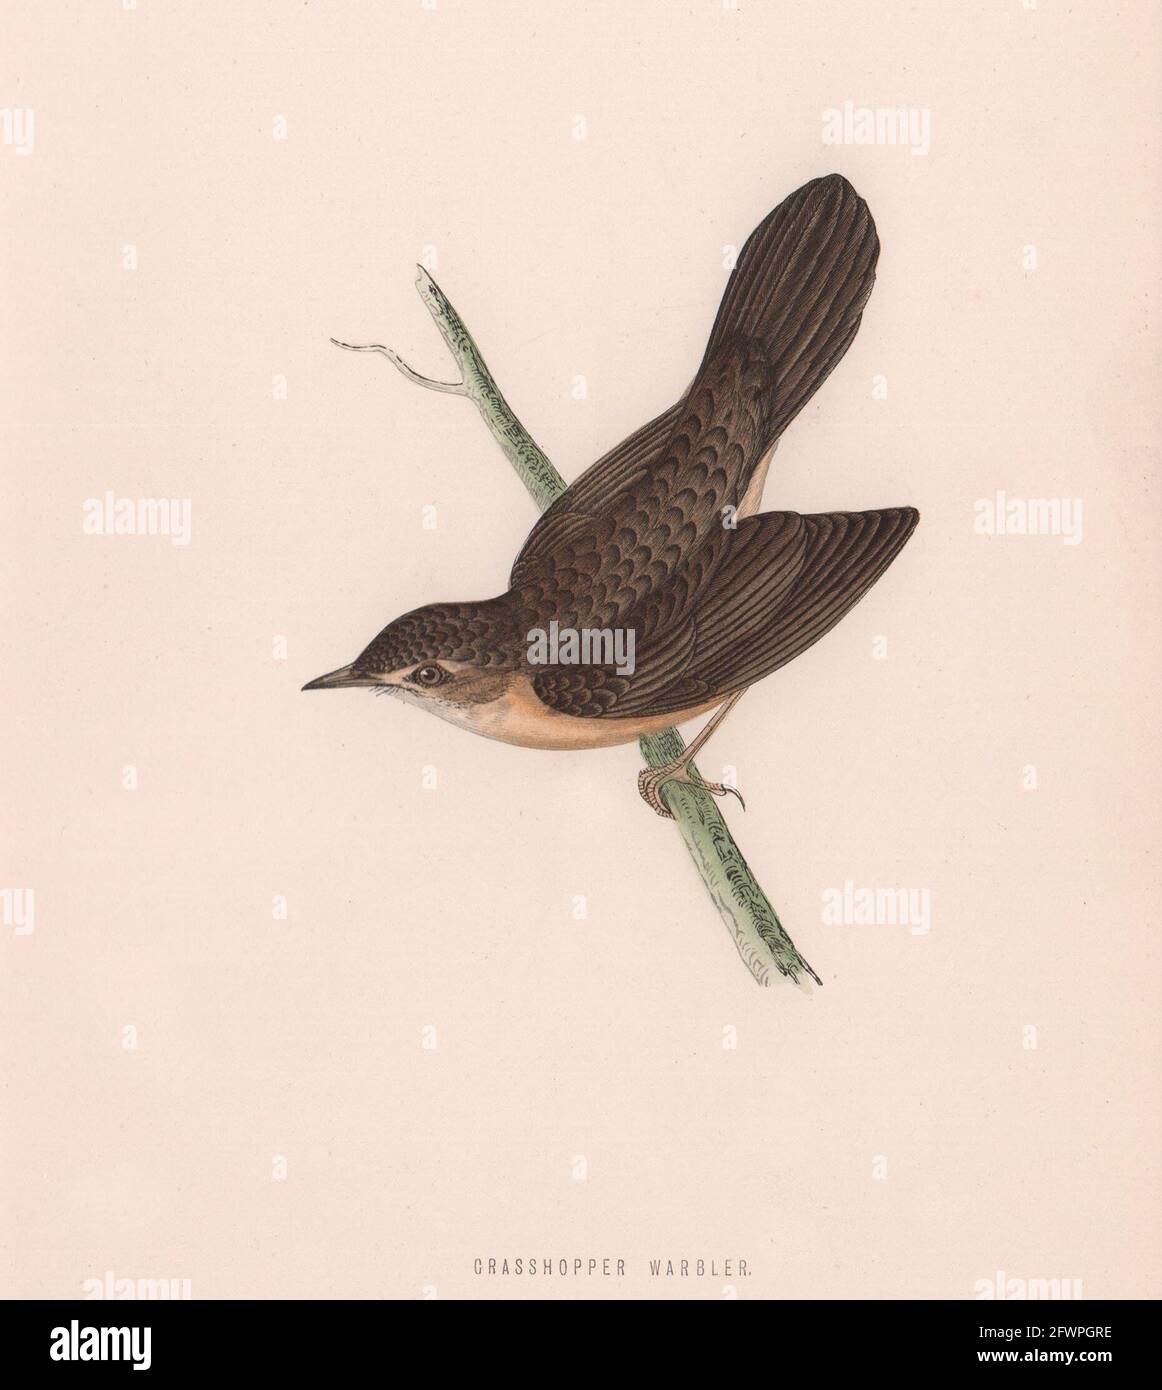 Grasshopper-Waldsänger. Morris's British Birds. Antik-Farbdruck 1870 Stockfoto